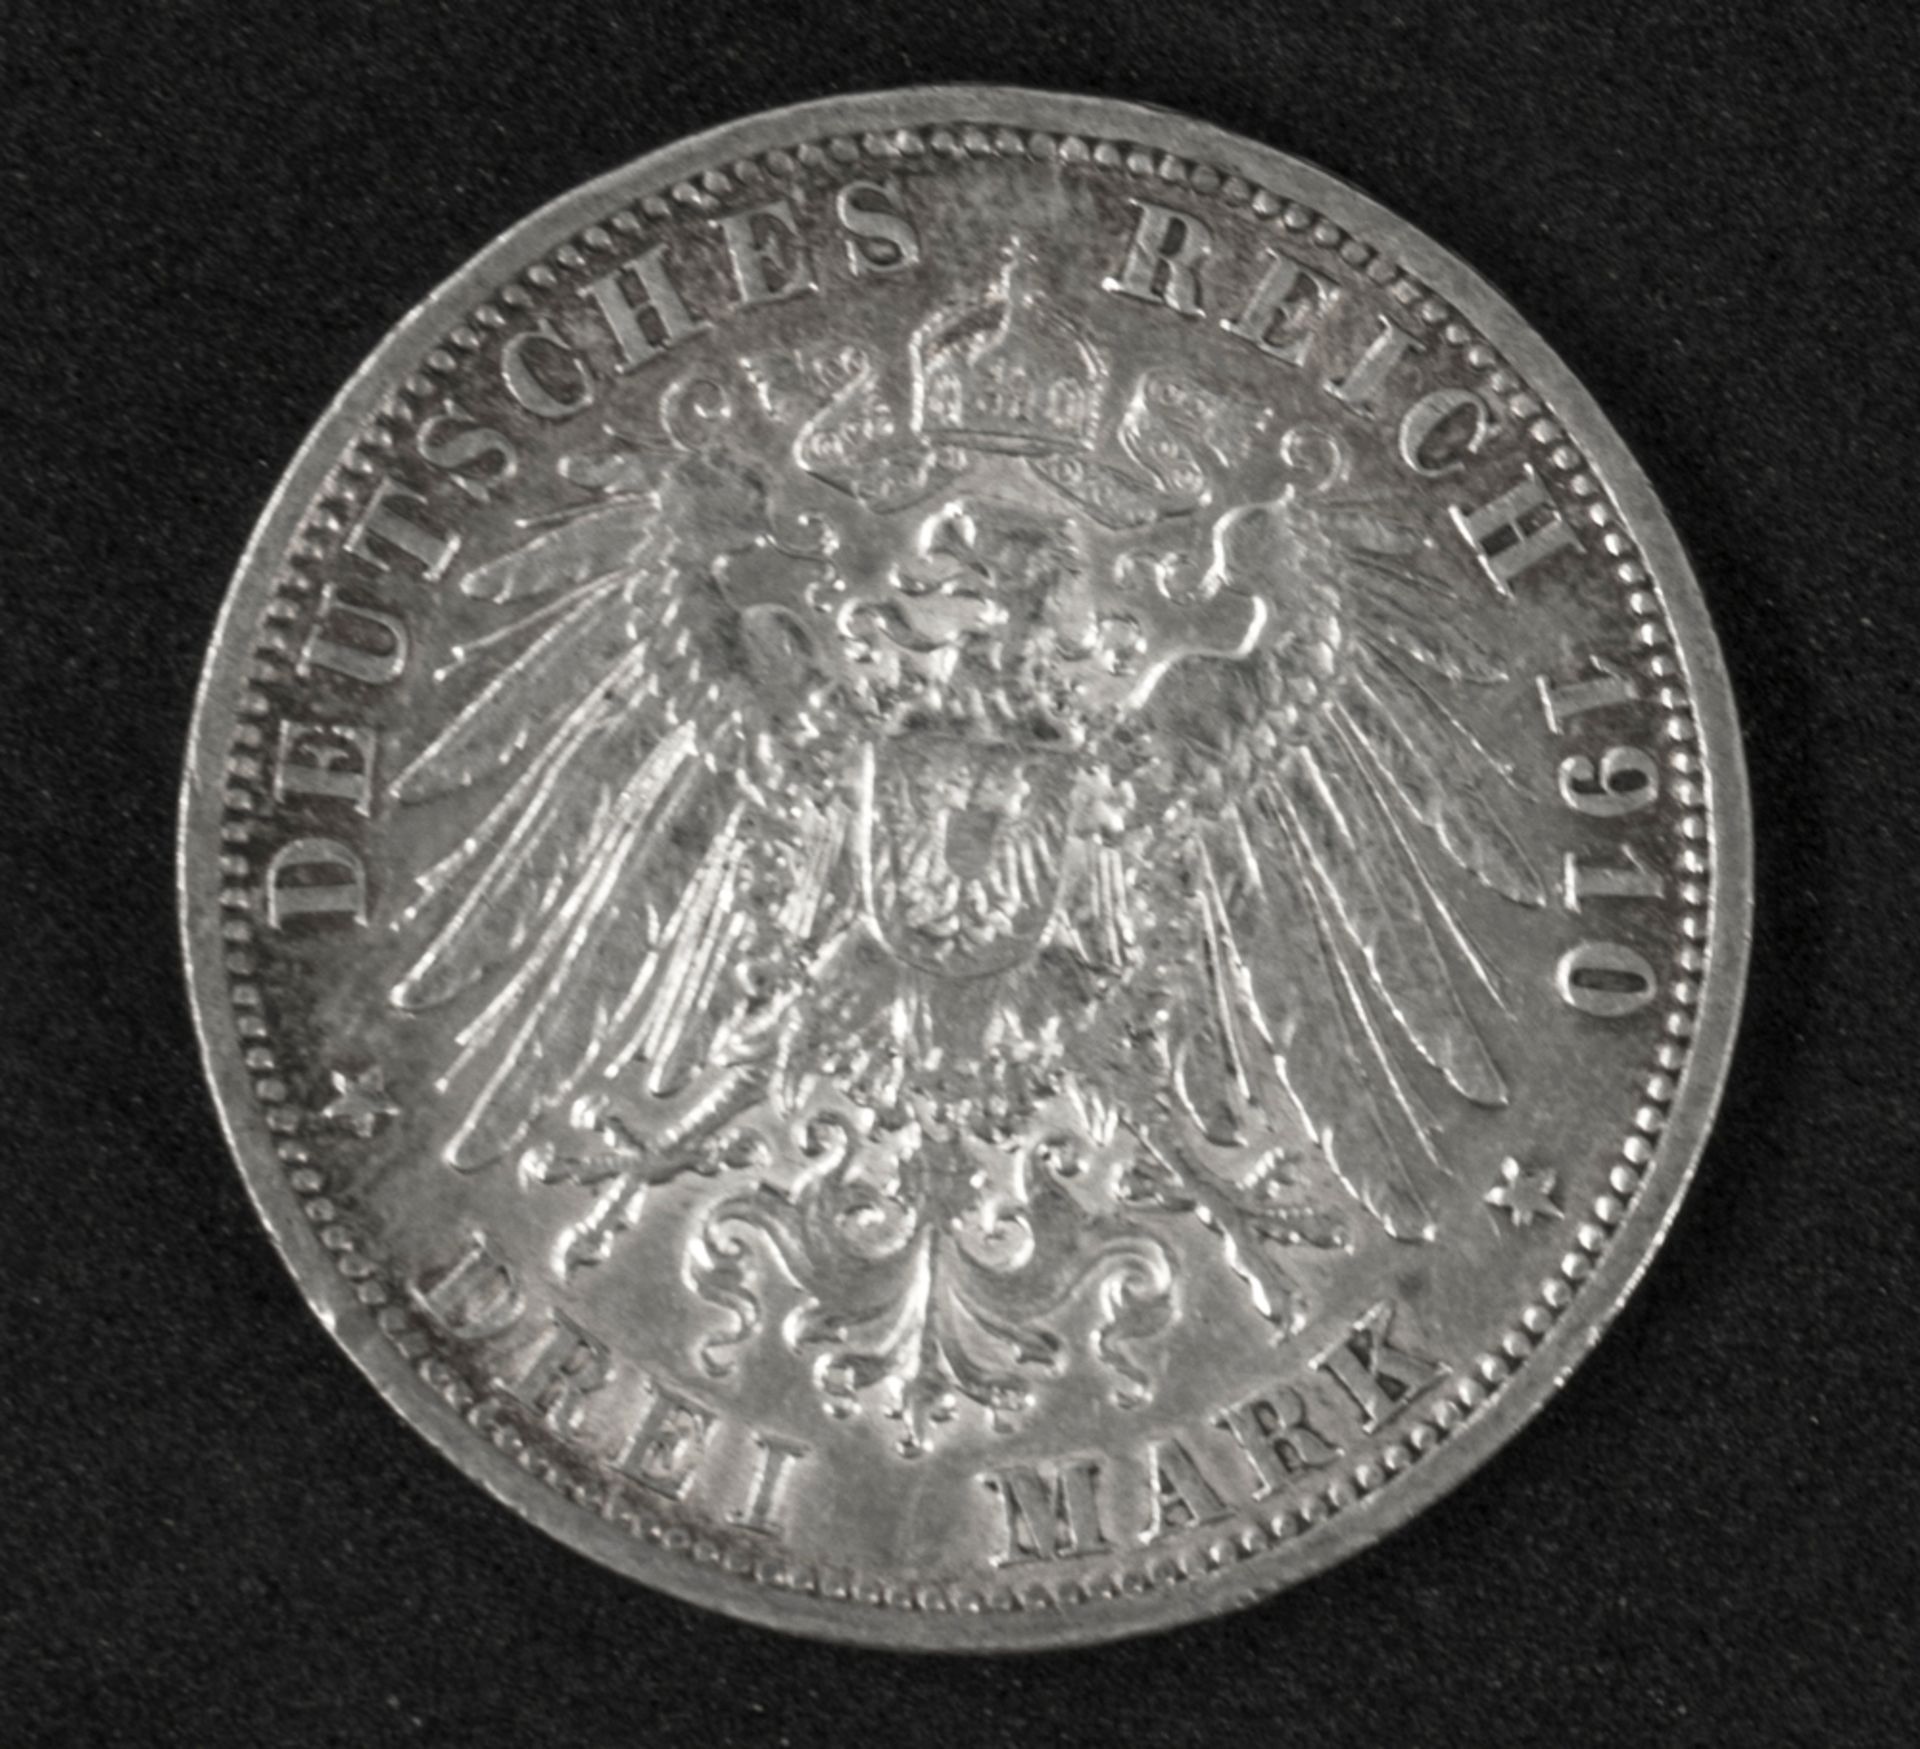 Deutsches Kaiserreich Preußen 1910 A, 3 Mark - Silbermünze "Wilhelm II." Erhaltung: ss+. - Image 2 of 2